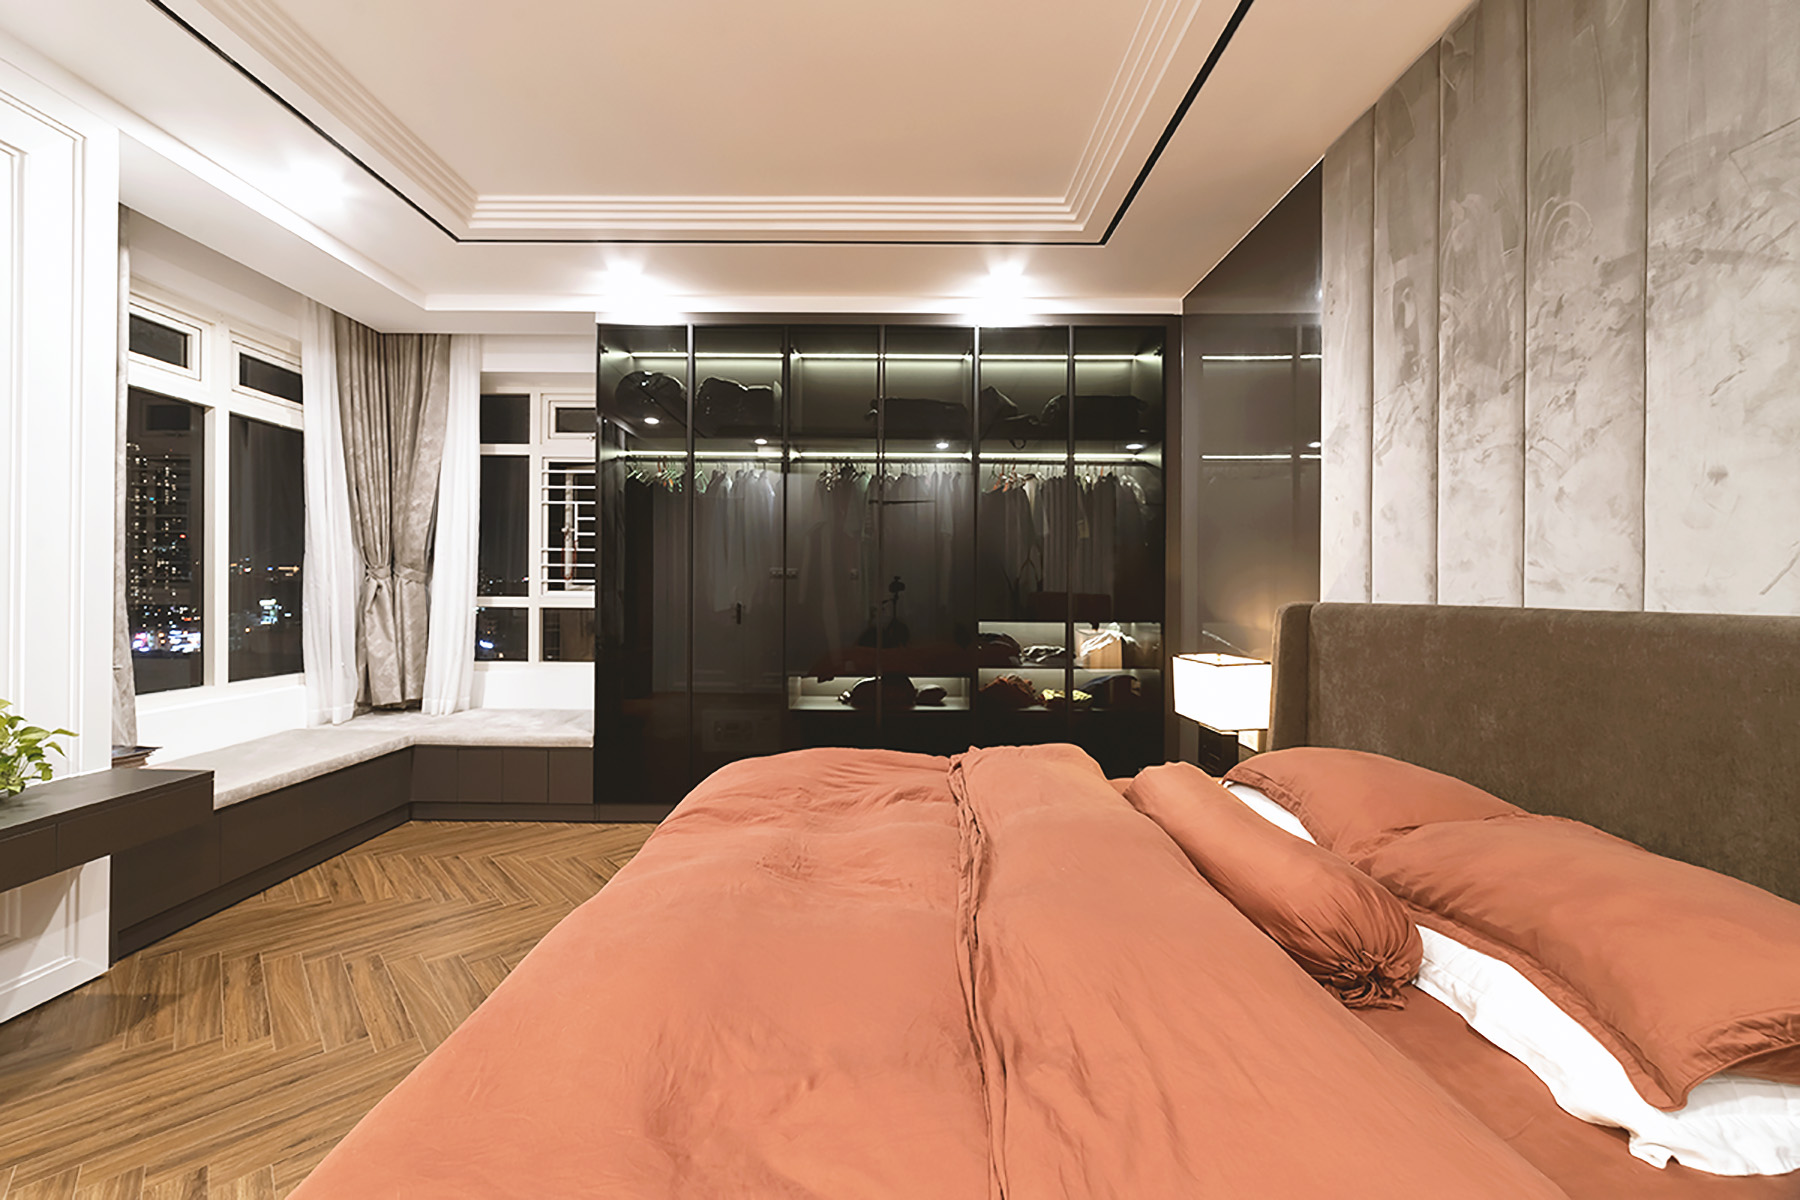 Phòng ngủ Master, phong cách Hiện đại Modern, hoàn thiện nội thất, căn hộ Saigon Pearl Topaz 2